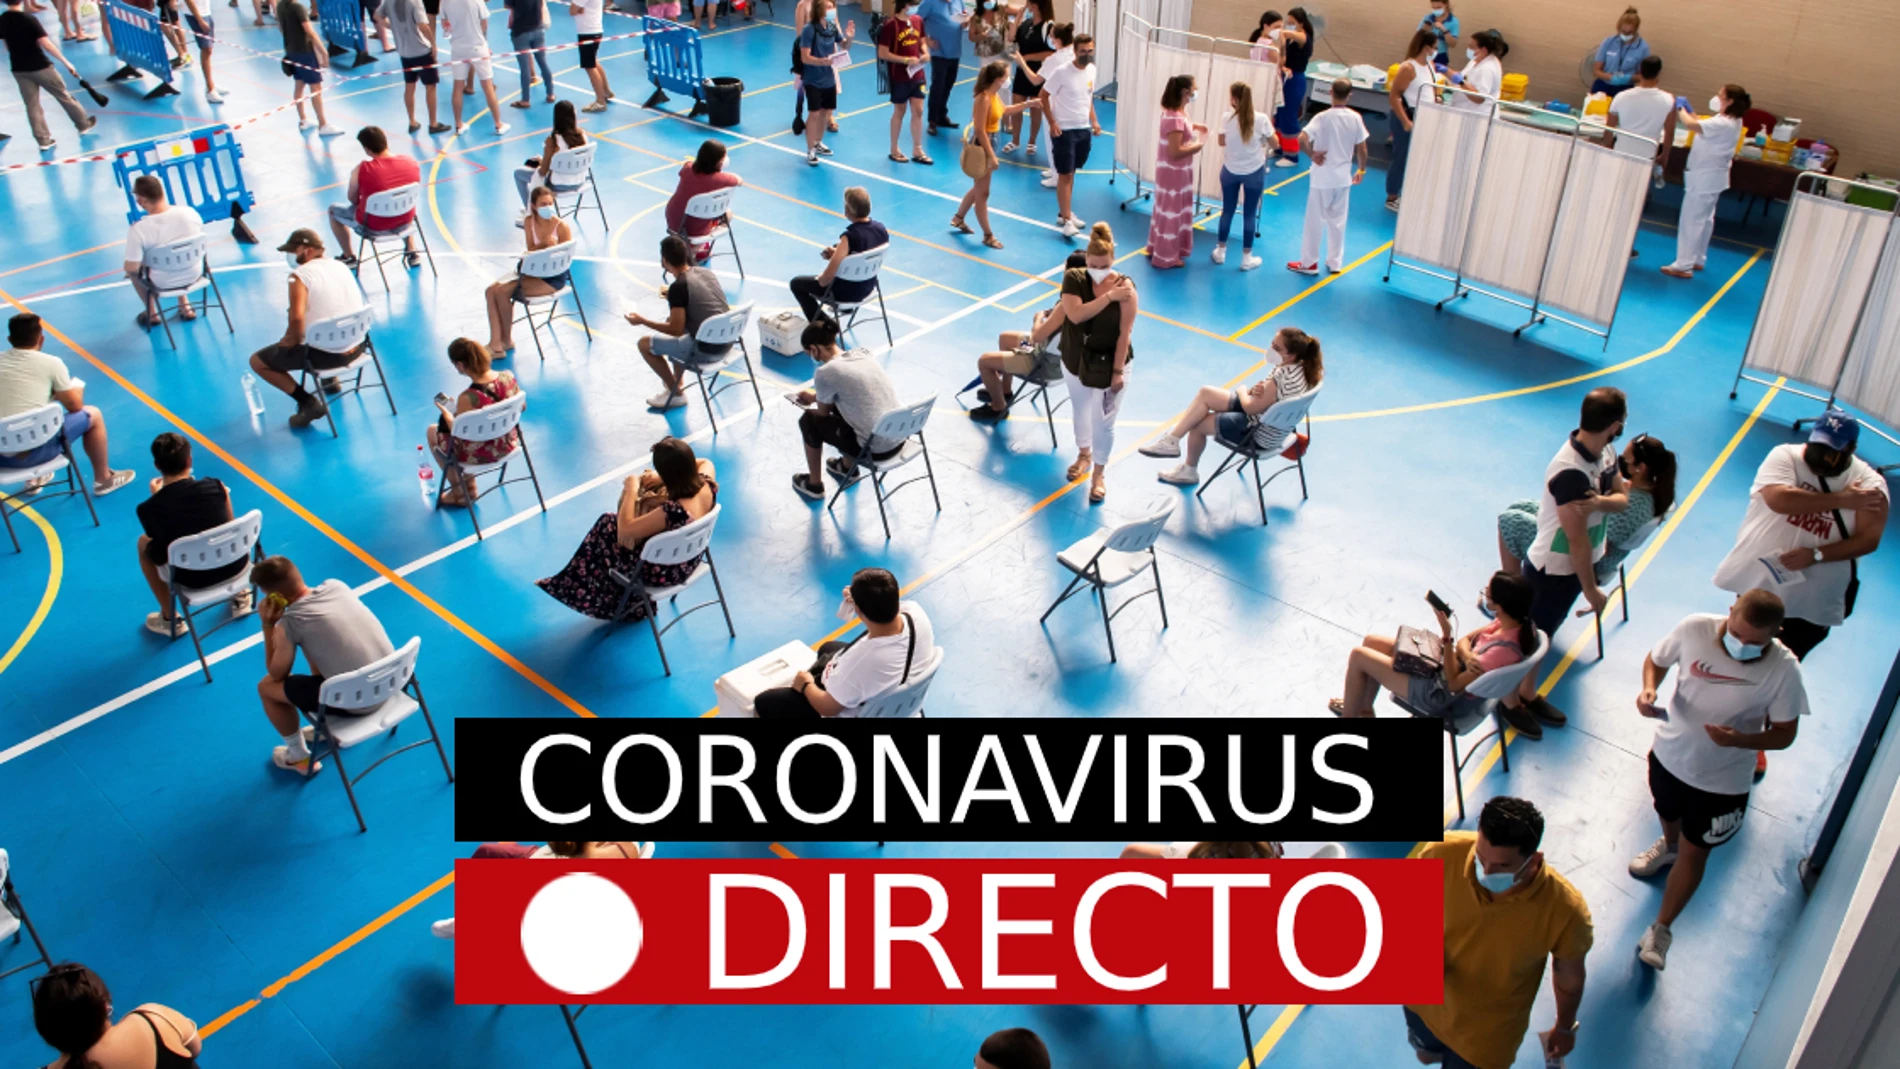 Última hora de coronavirus: Vacuna, nuevas medidas y certificado Covid en España